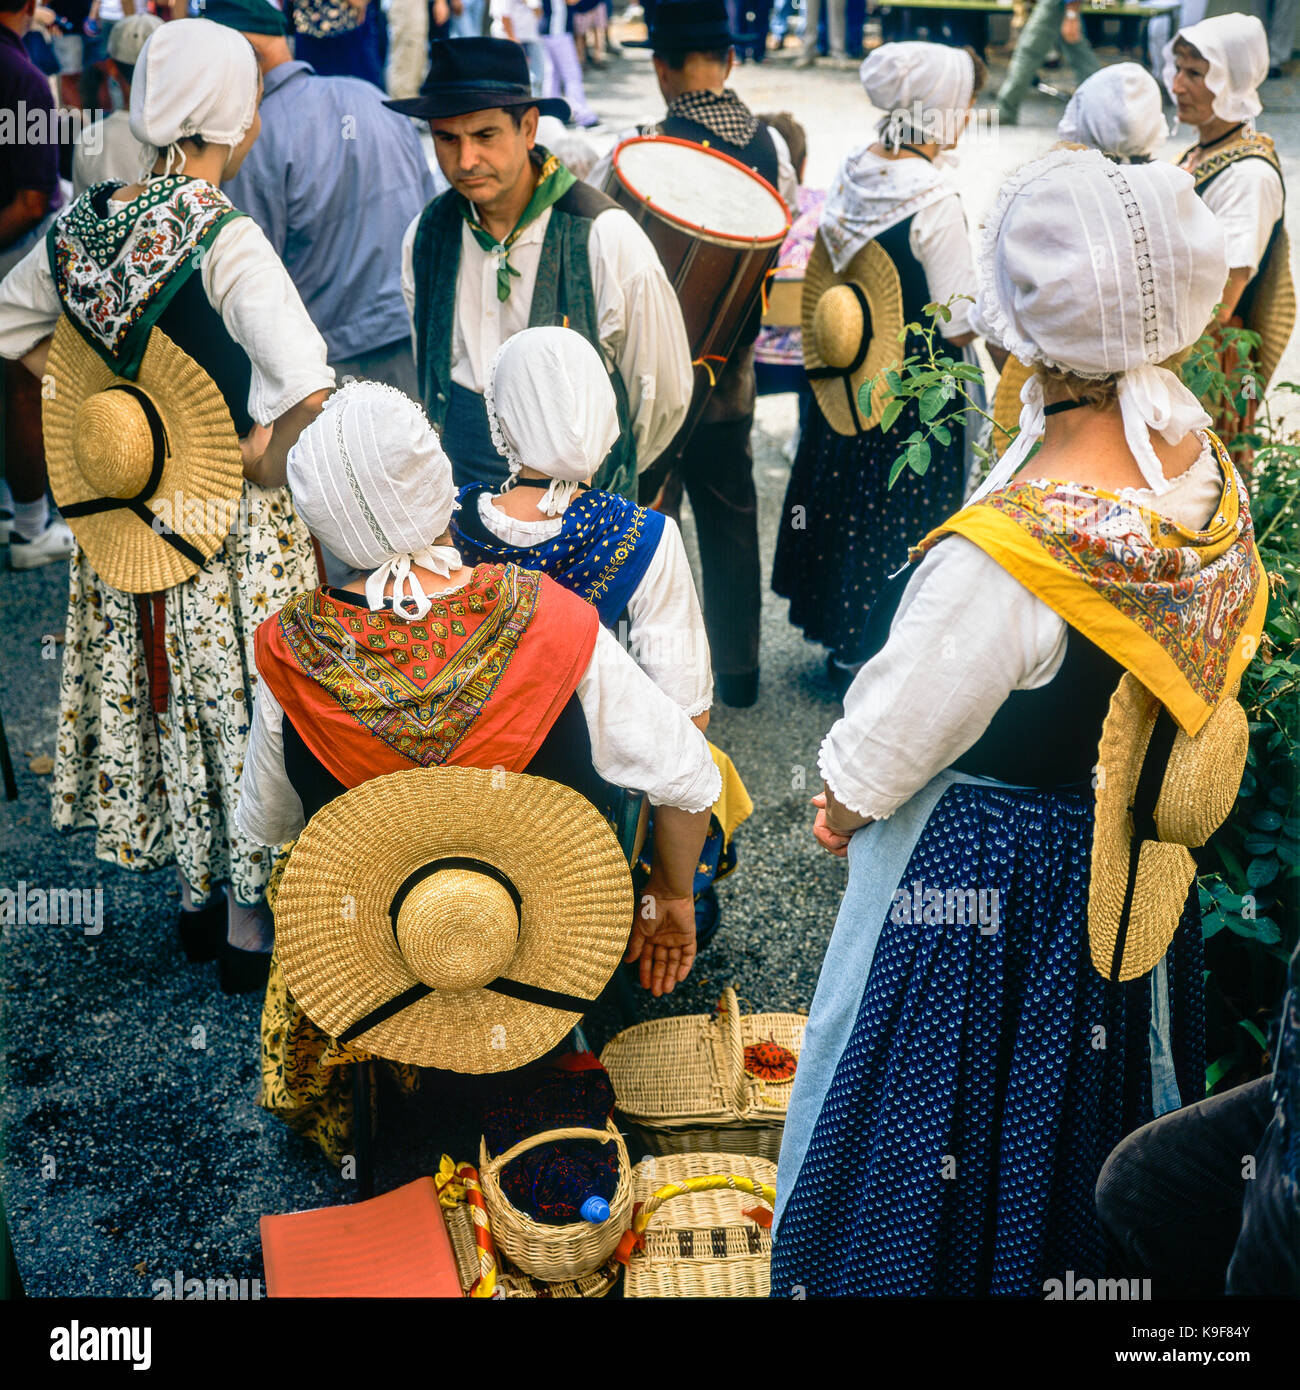 Le Dansaire de St Donat, groupe folklorique, village annuel juste, Montfroc, Drôme, Provence, France Banque D'Images